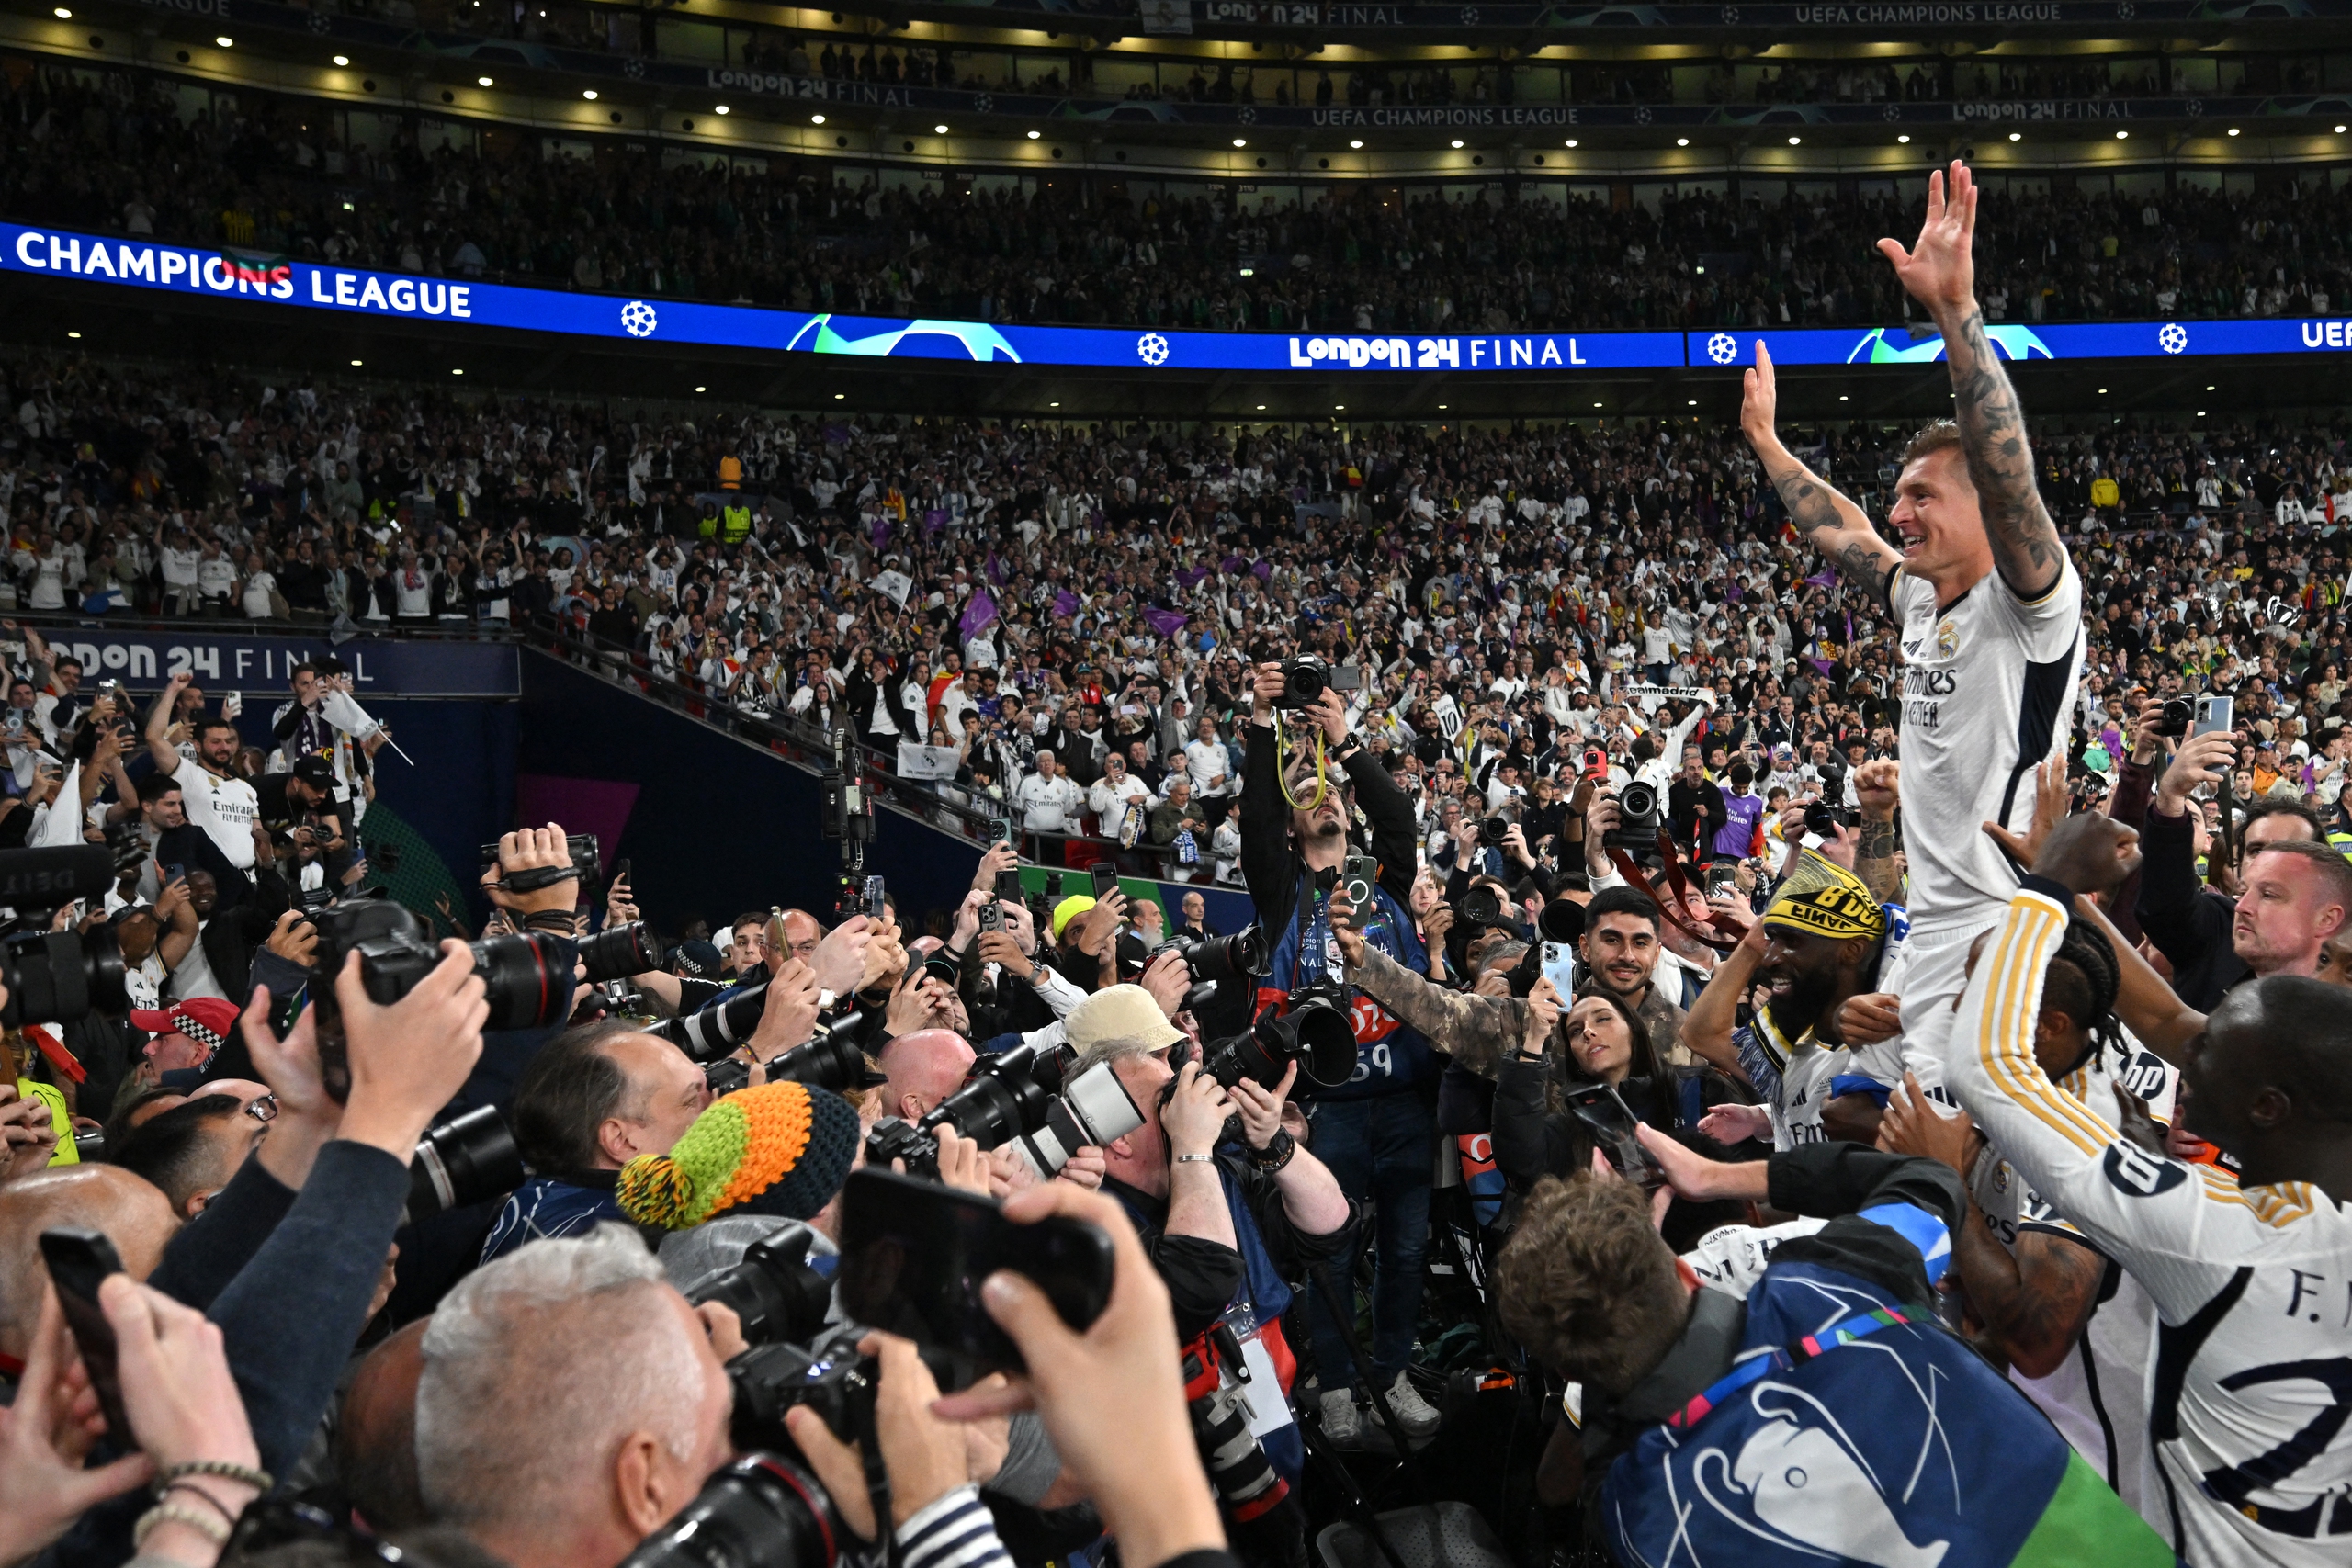 Lần thứ 15 đăng quang, Real Madrid tiếp tục làm bá chủ giải hàng đầu châu Âu- Ảnh 7.